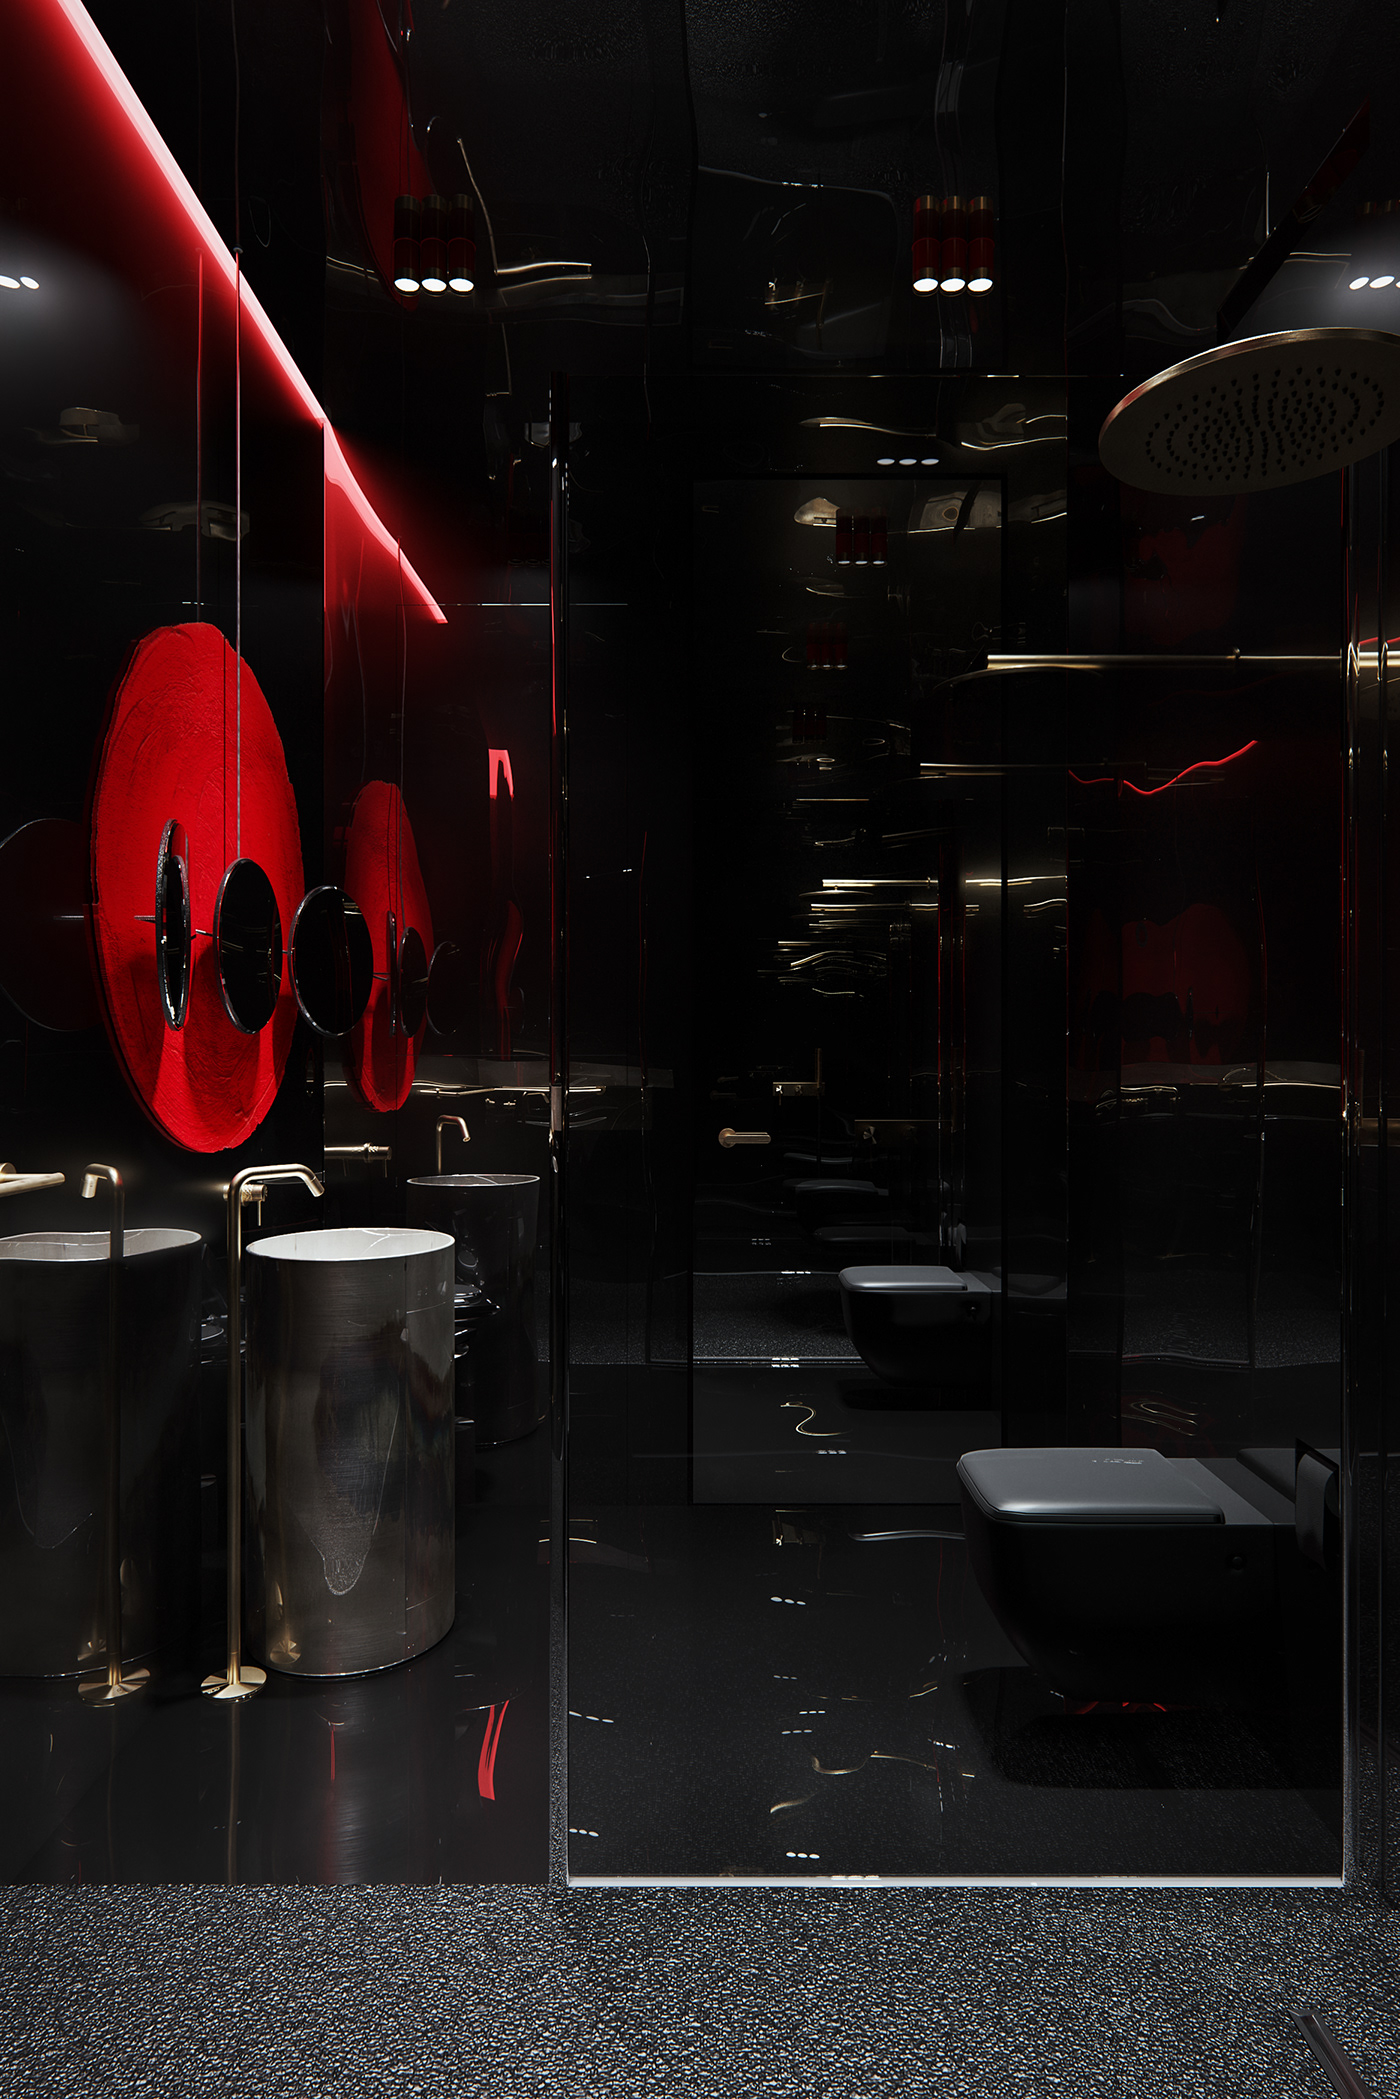 3ds max architecture bathroom CGI corona render  Interior interior design  visualization